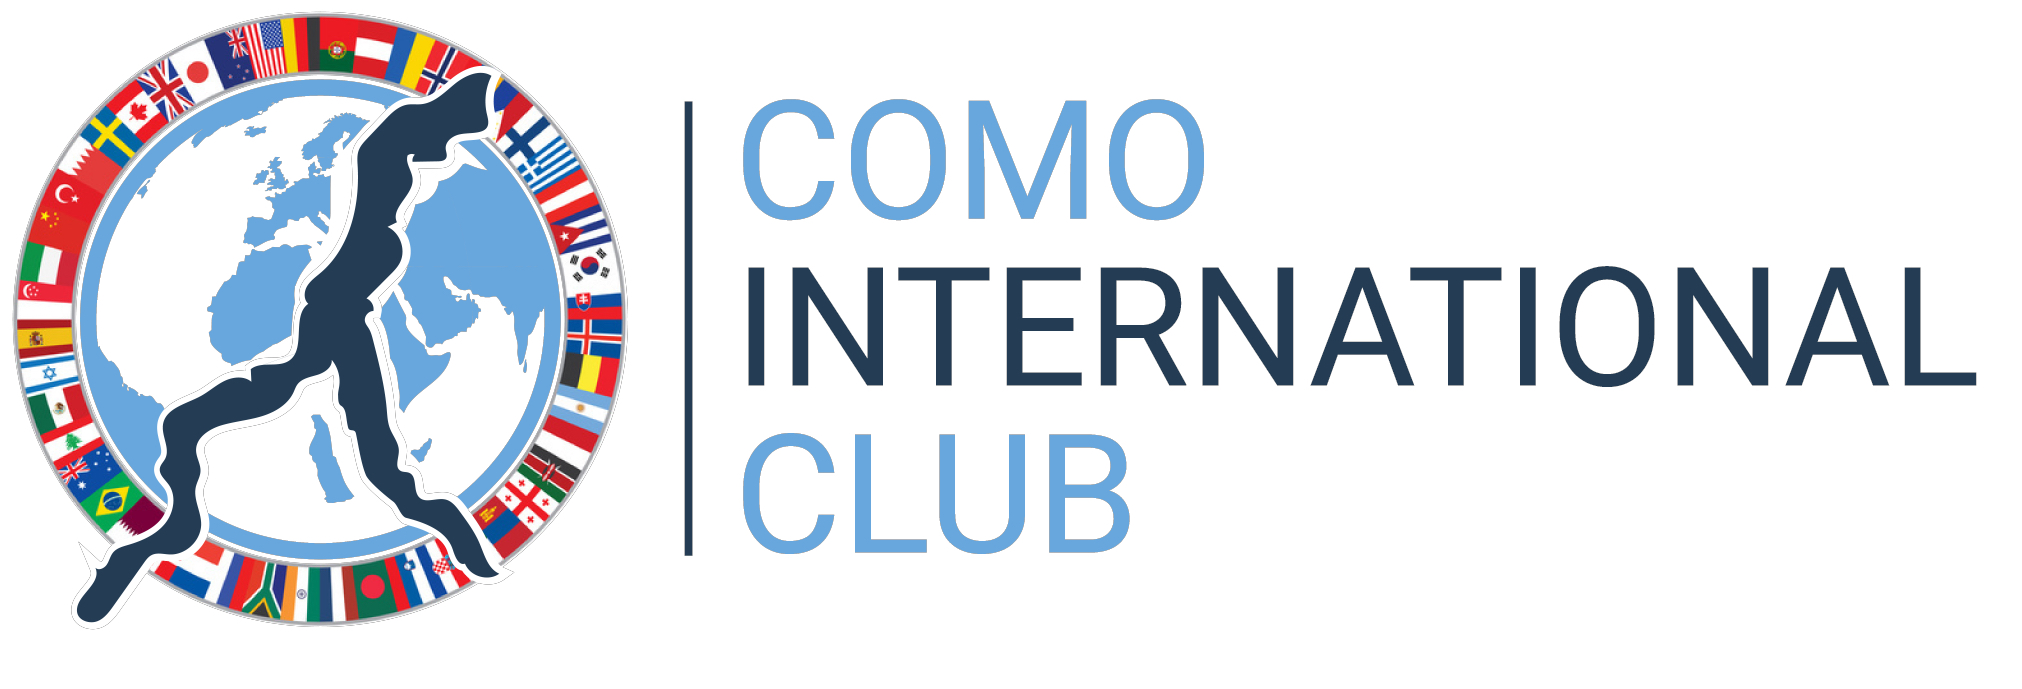 Como International Club